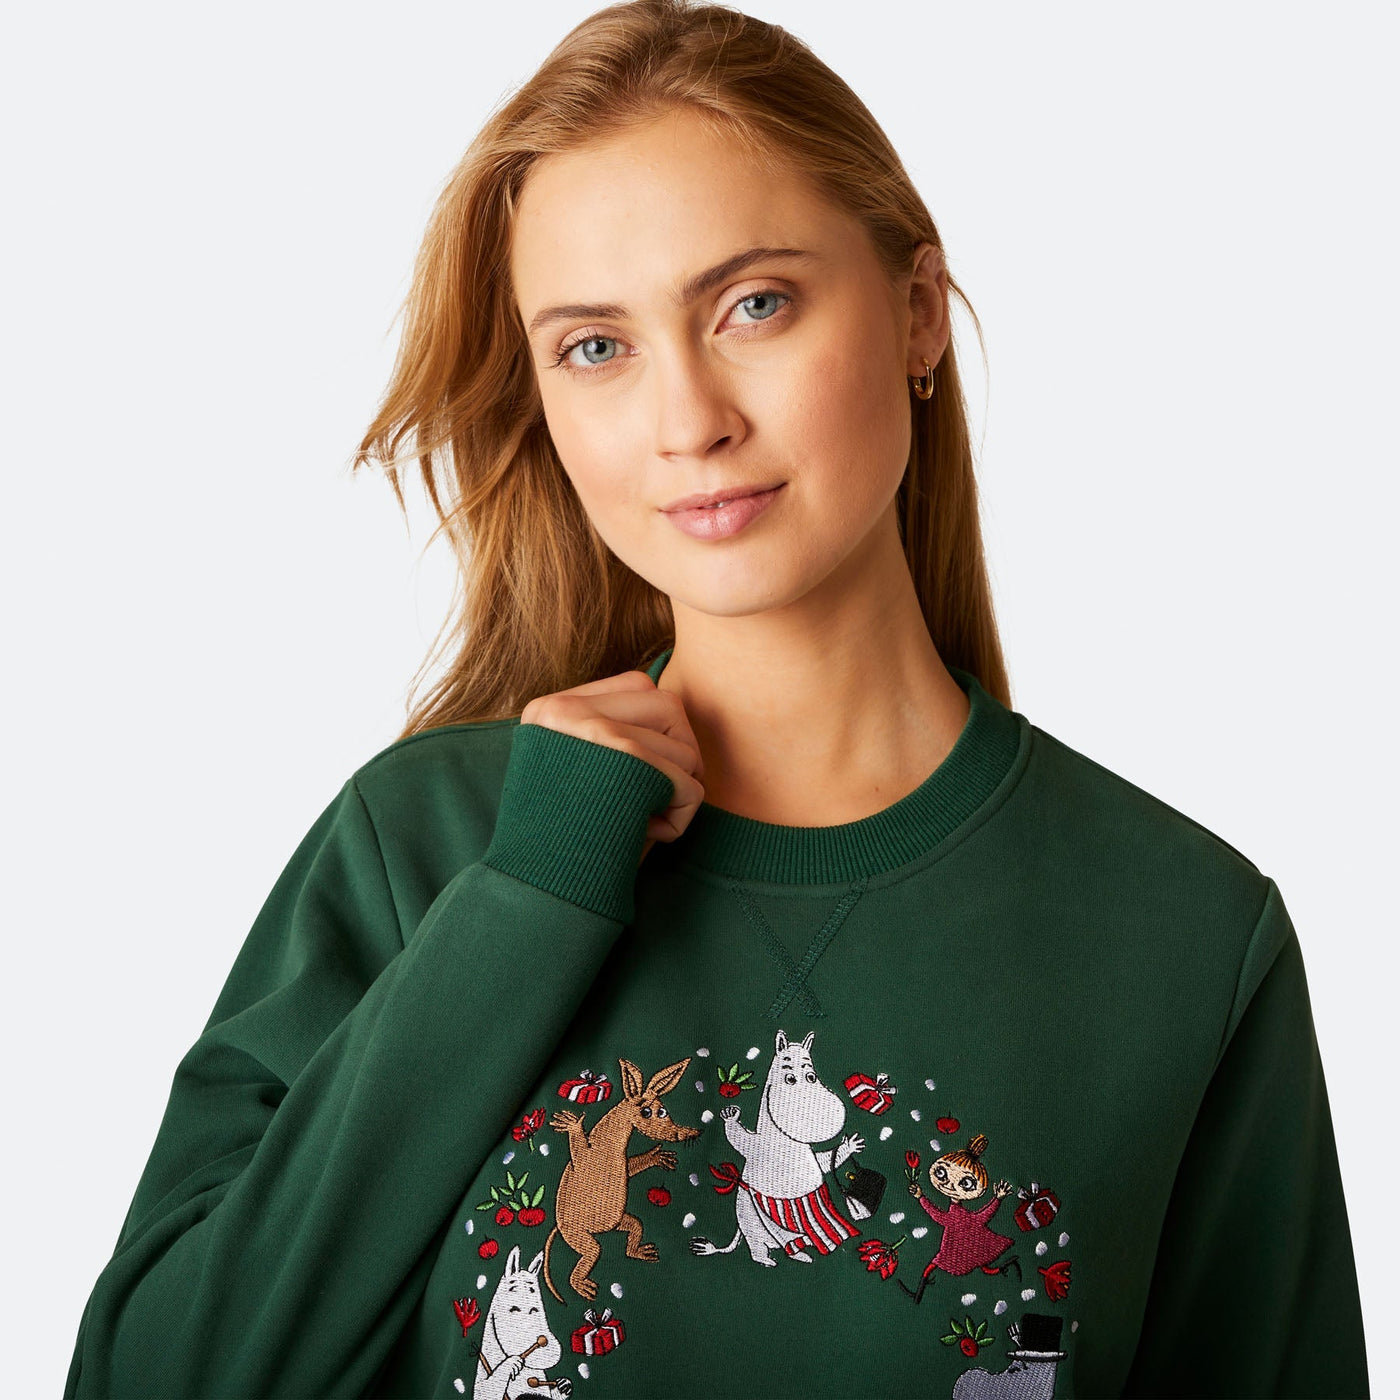 Mumins Grünes Weihnachts-Sweatshirt Damen